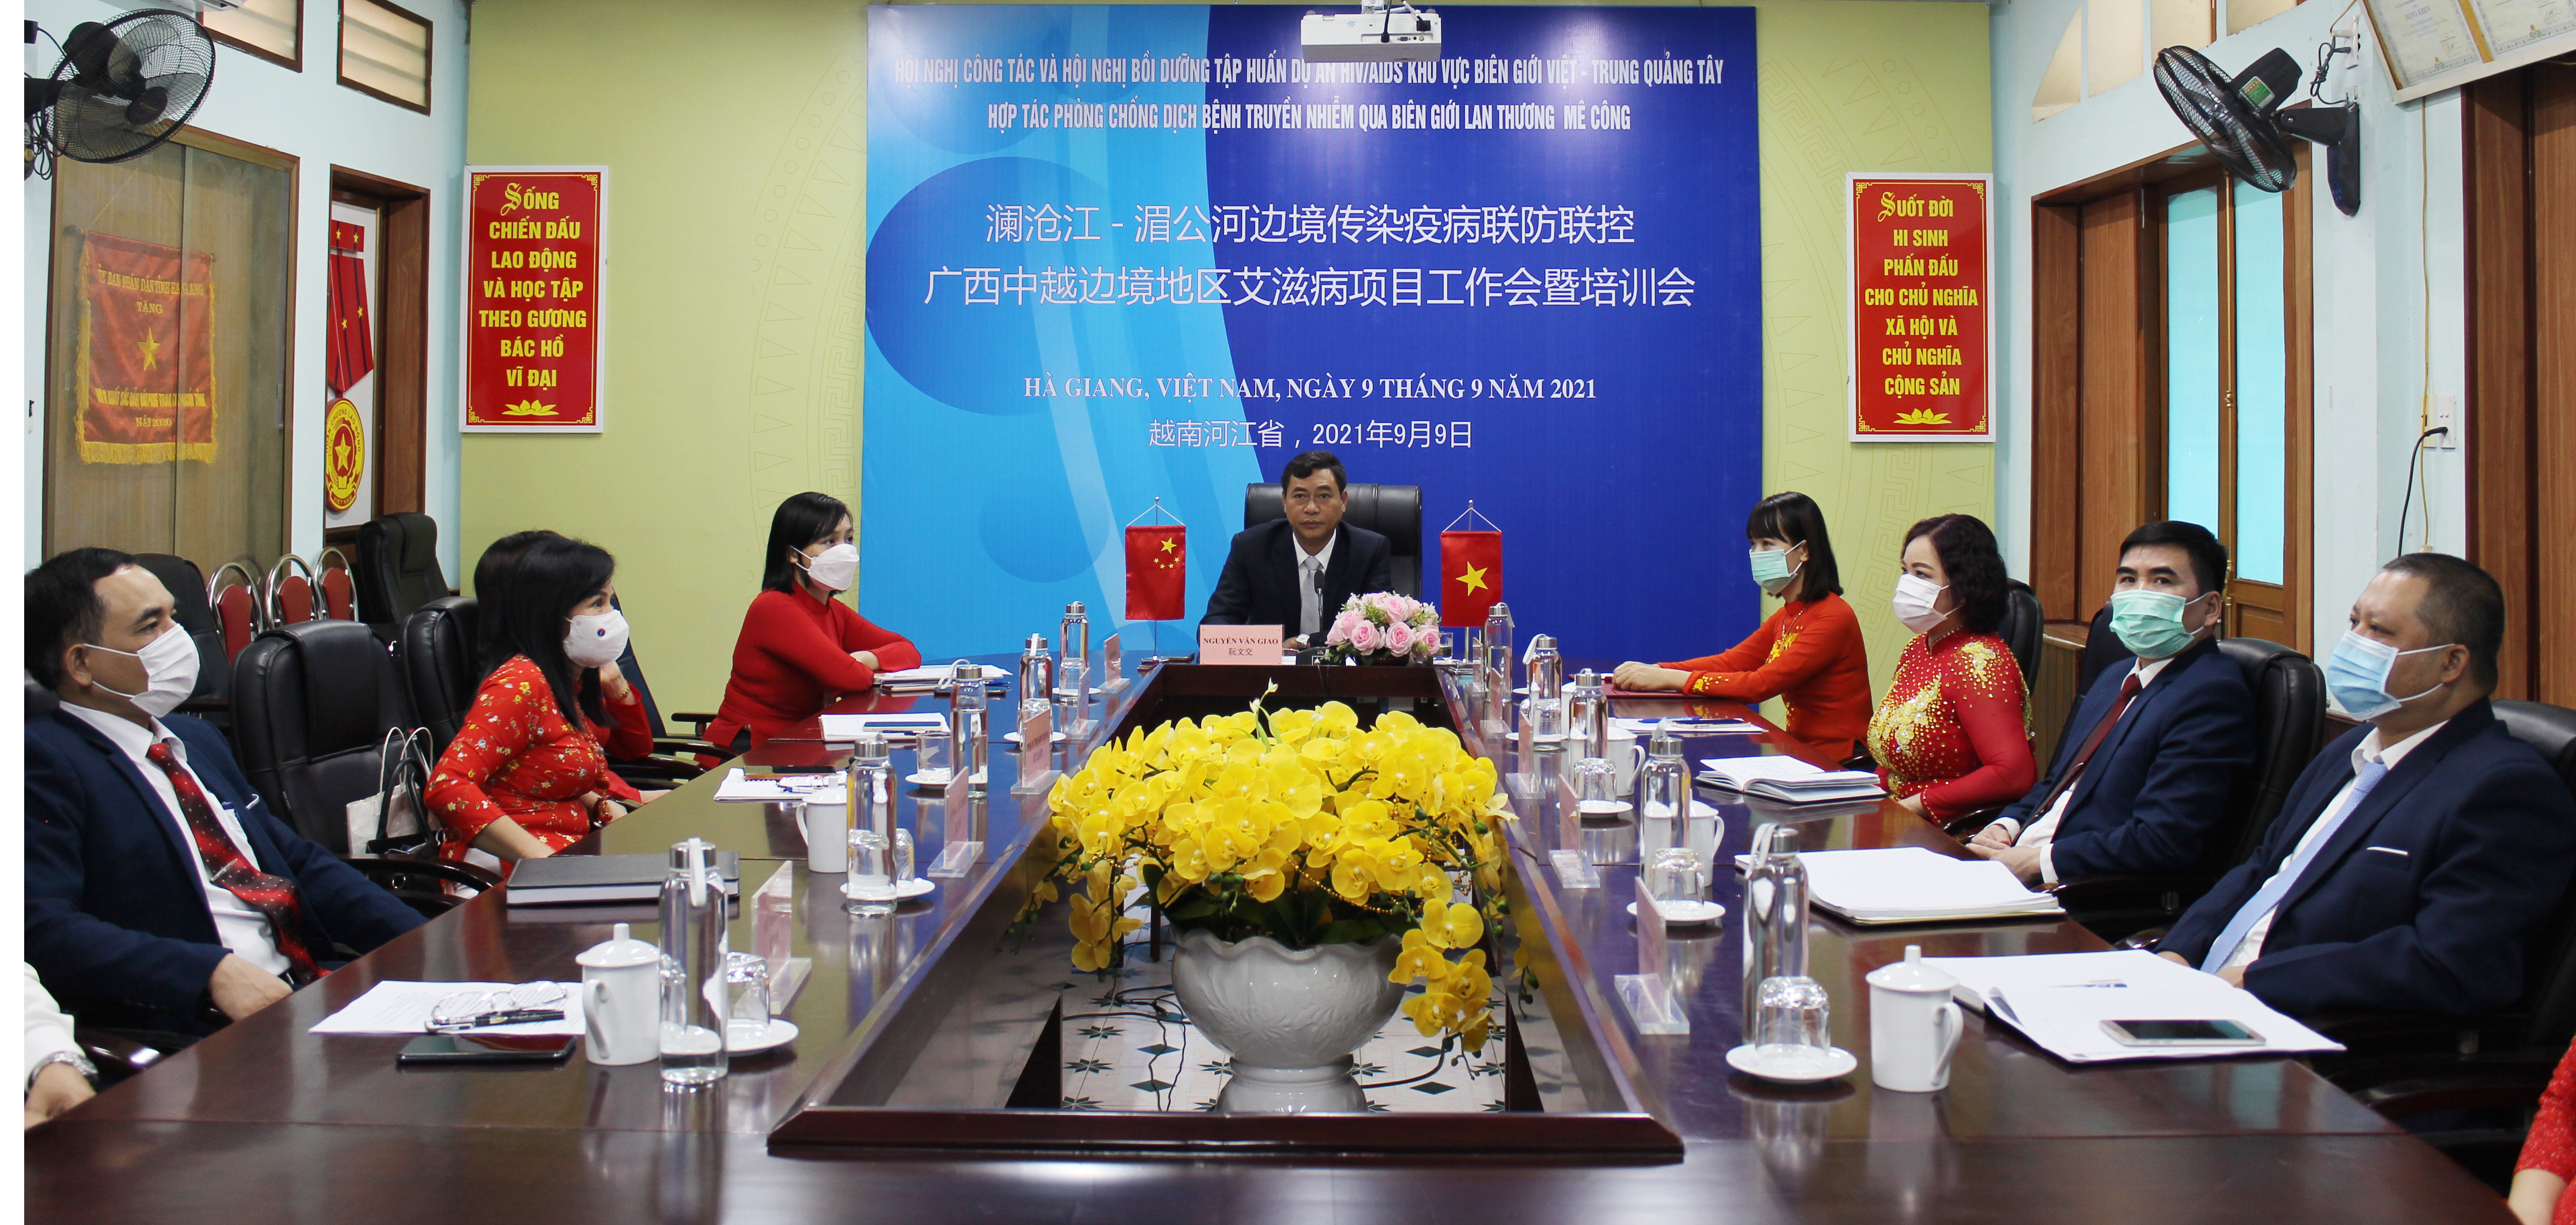 Hội nghị trực tuyến tập huấn công tác phòng chống dịch bệnh truyền nhiễm khu vực biên giới Việt Nam và Quảng Tây, Trung Quốc